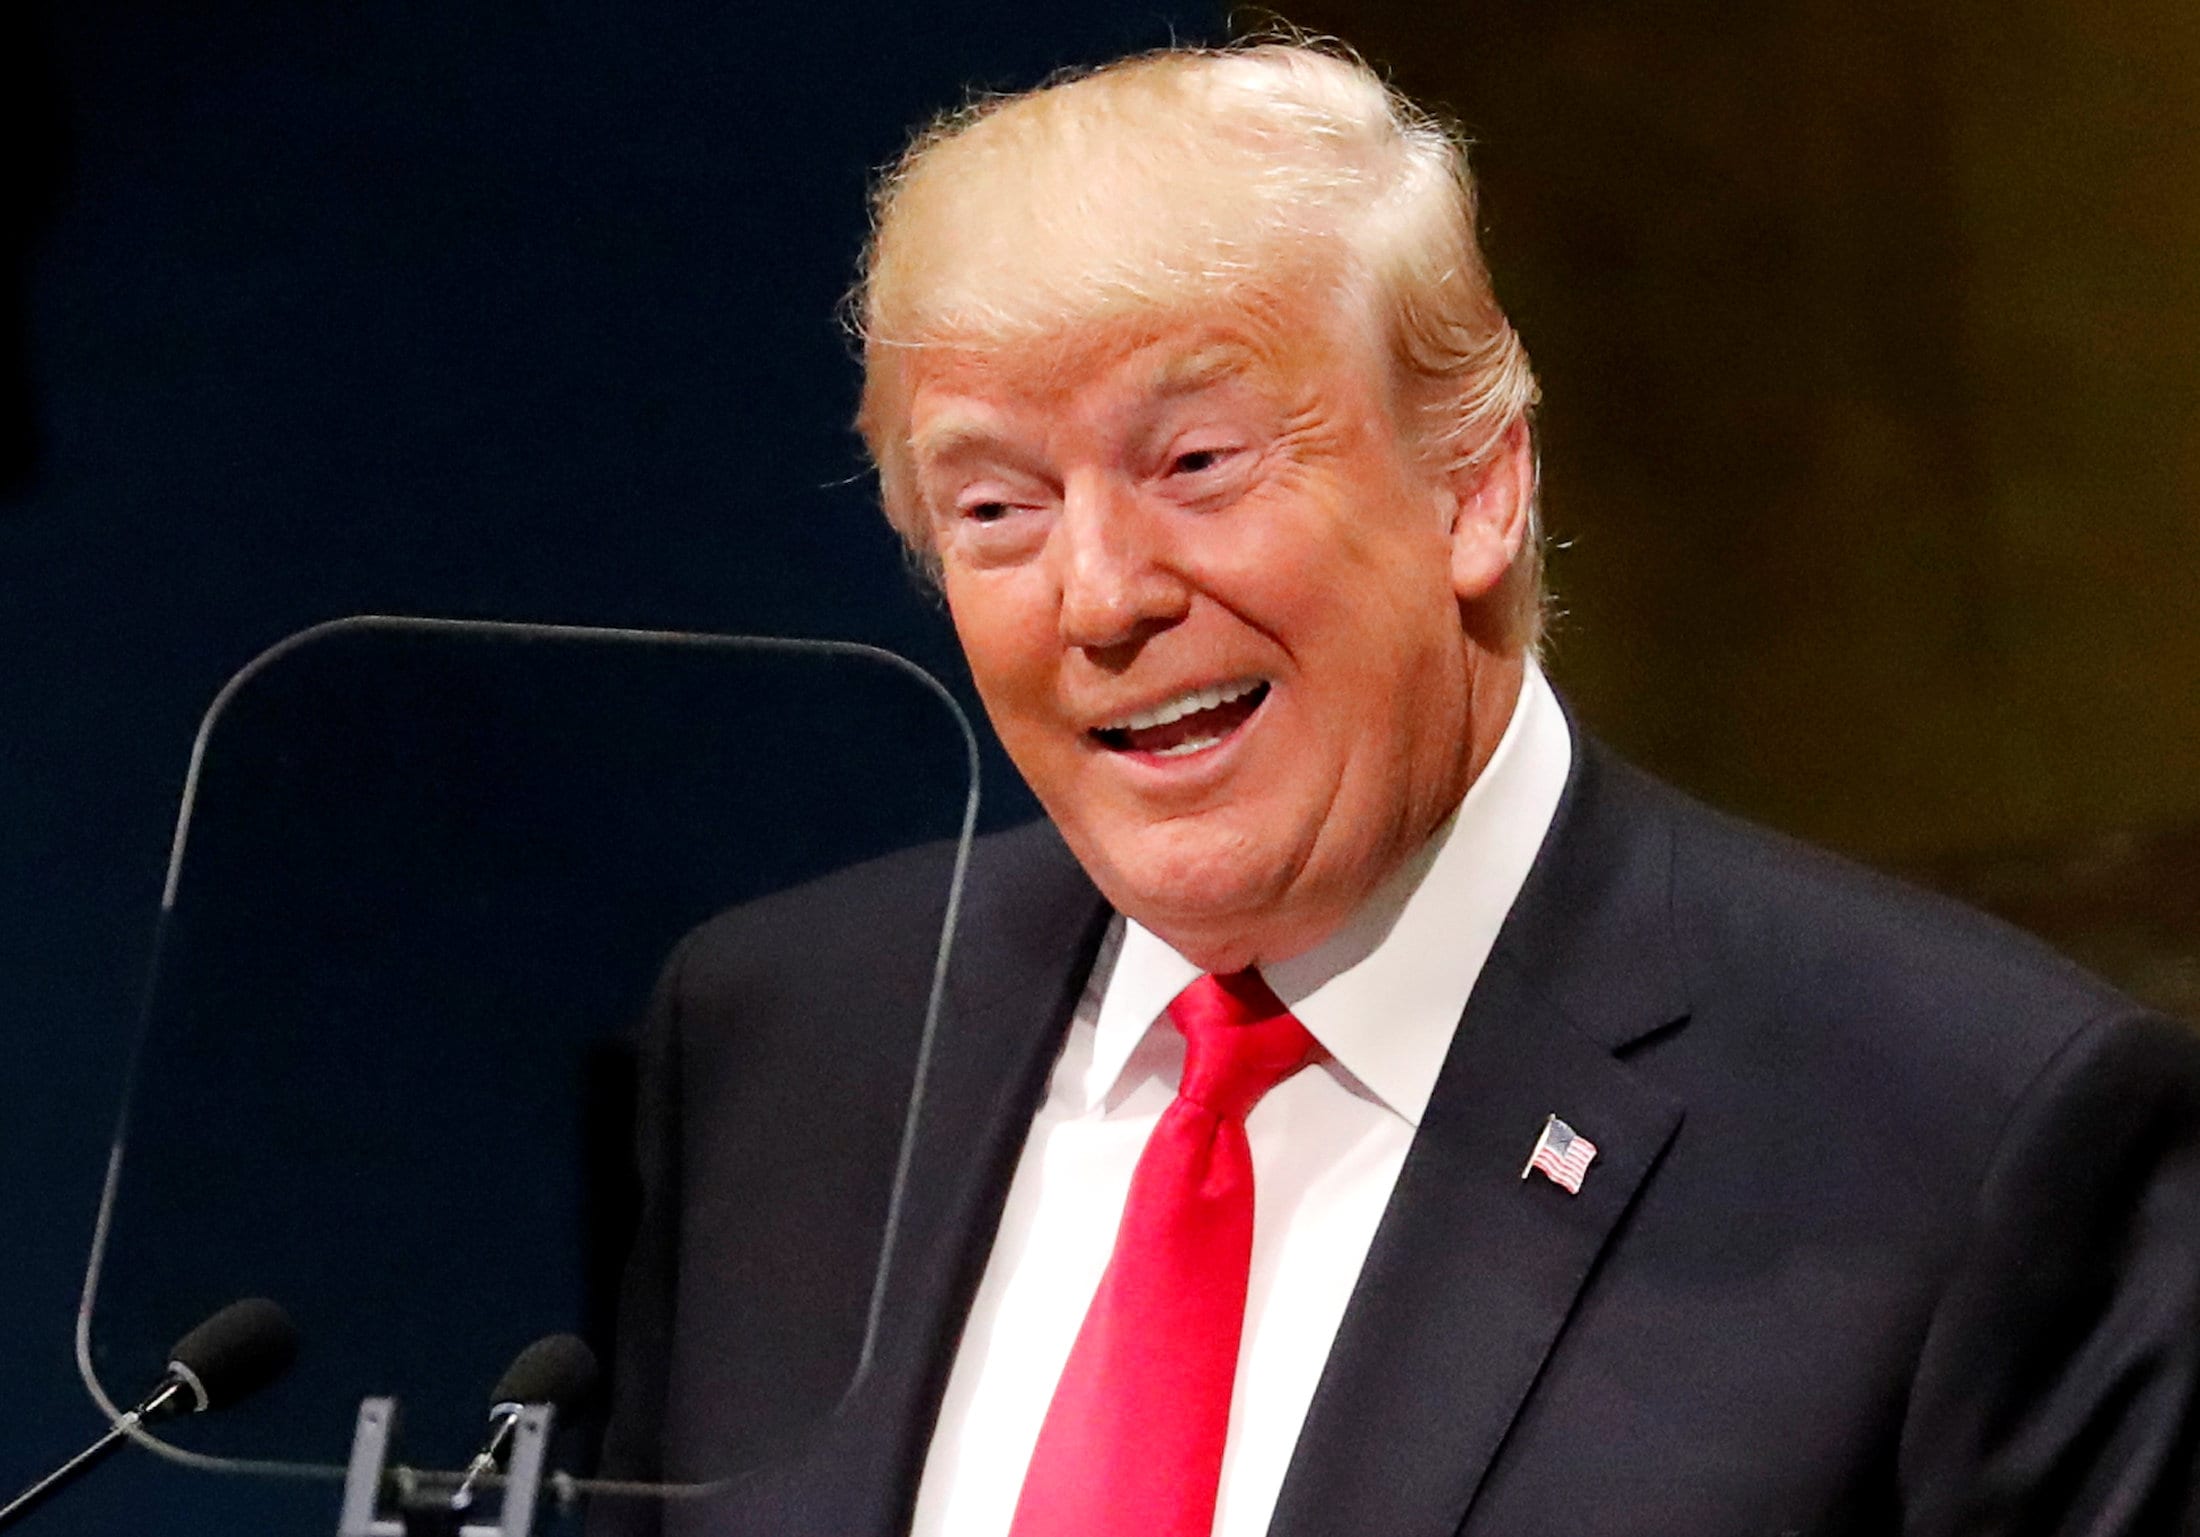 Trump klopt zich op de borst in VN-toespraak, publiek barst in lachen uit: "Die reactie had ik niet verwacht"